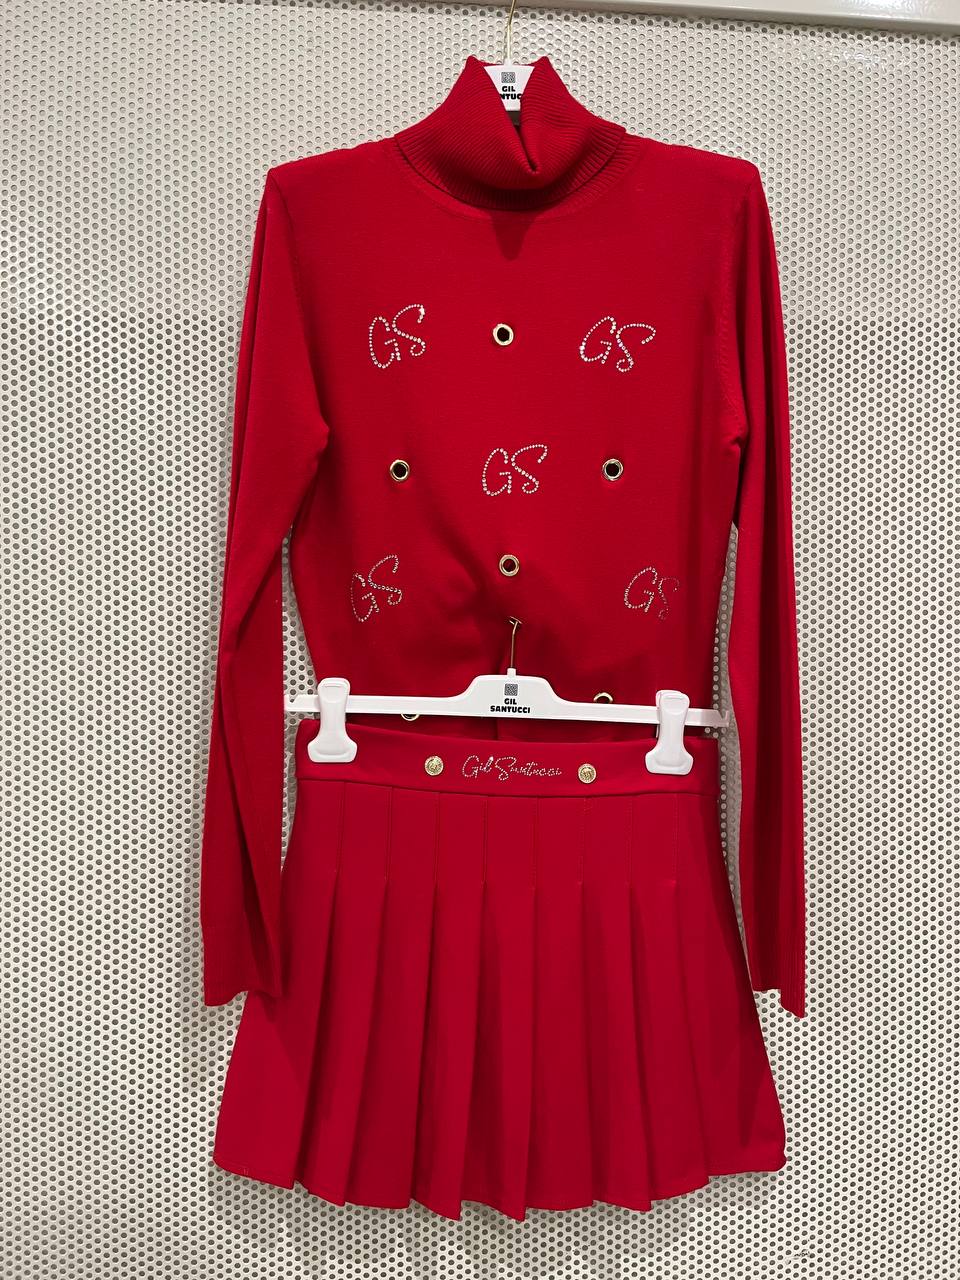 Итальянская одежда, бренд Gil Santucci, арт. 73100910